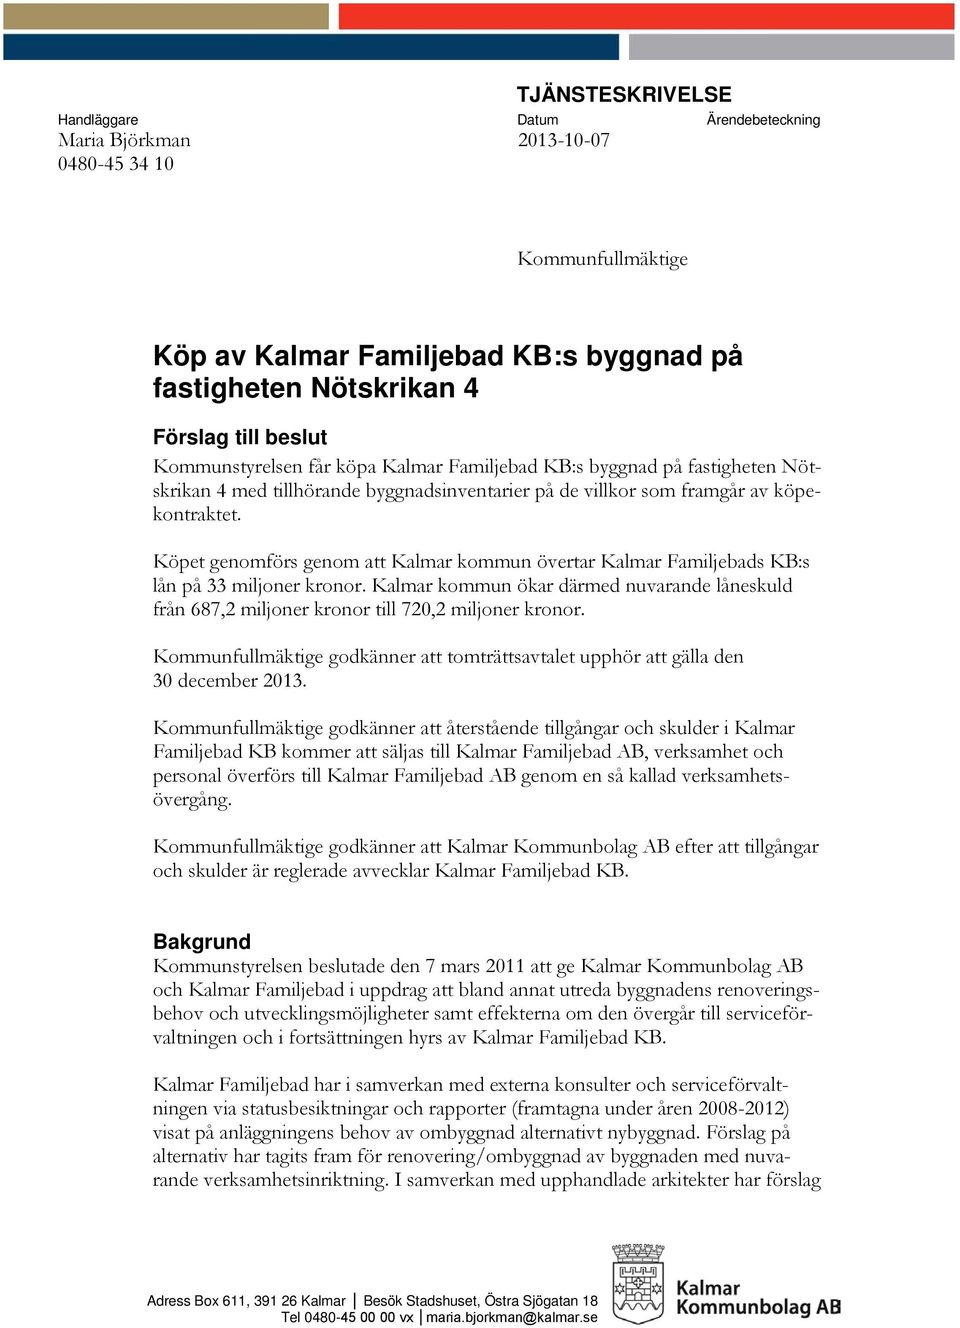 Köpet genomförs genom att Kalmar kommun övertar Kalmar Familjebads KB:s lån på 33 miljoner kronor. Kalmar kommun ökar därmed nuvarande låneskuld från 687,2 miljoner kronor till 720,2 miljoner kronor.